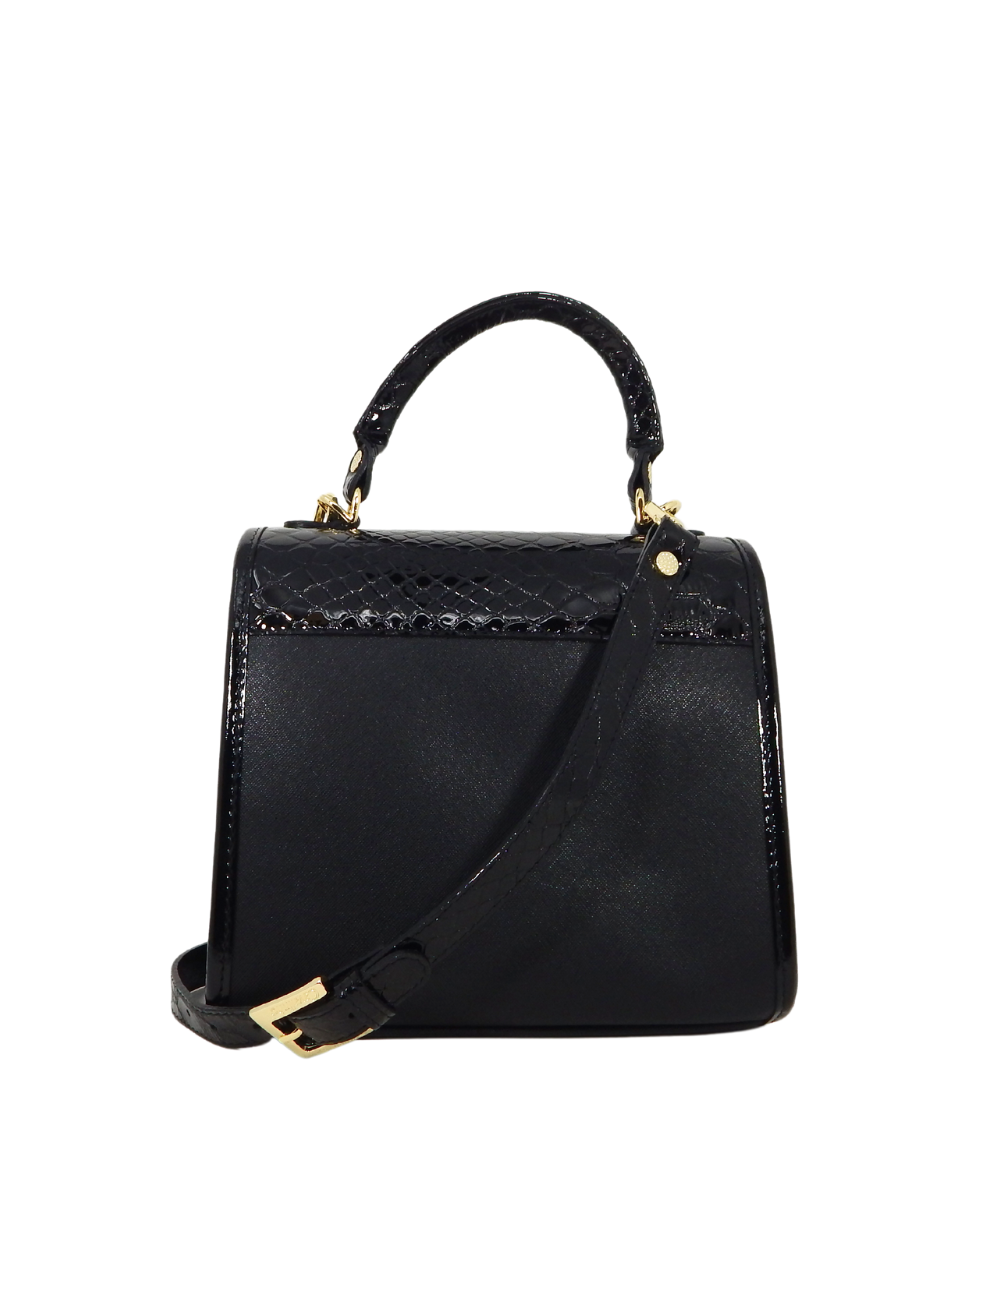 Cavalinho Cherry Blossom Handbag SKU 18810518.01 #color_black